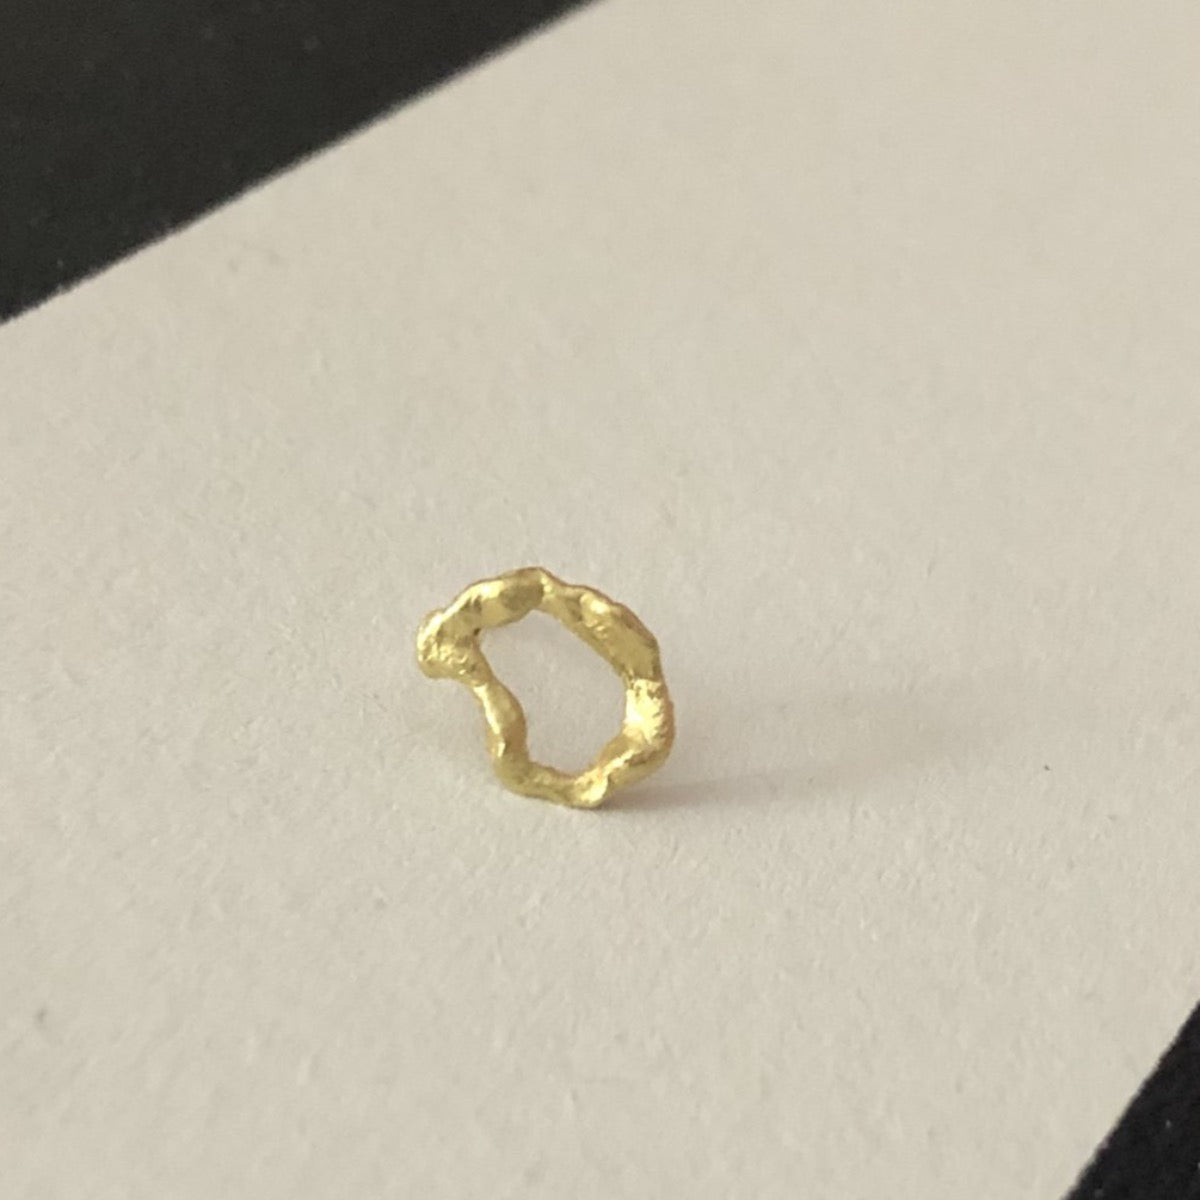 Lava single stud earrings No.1 in 18kt gold